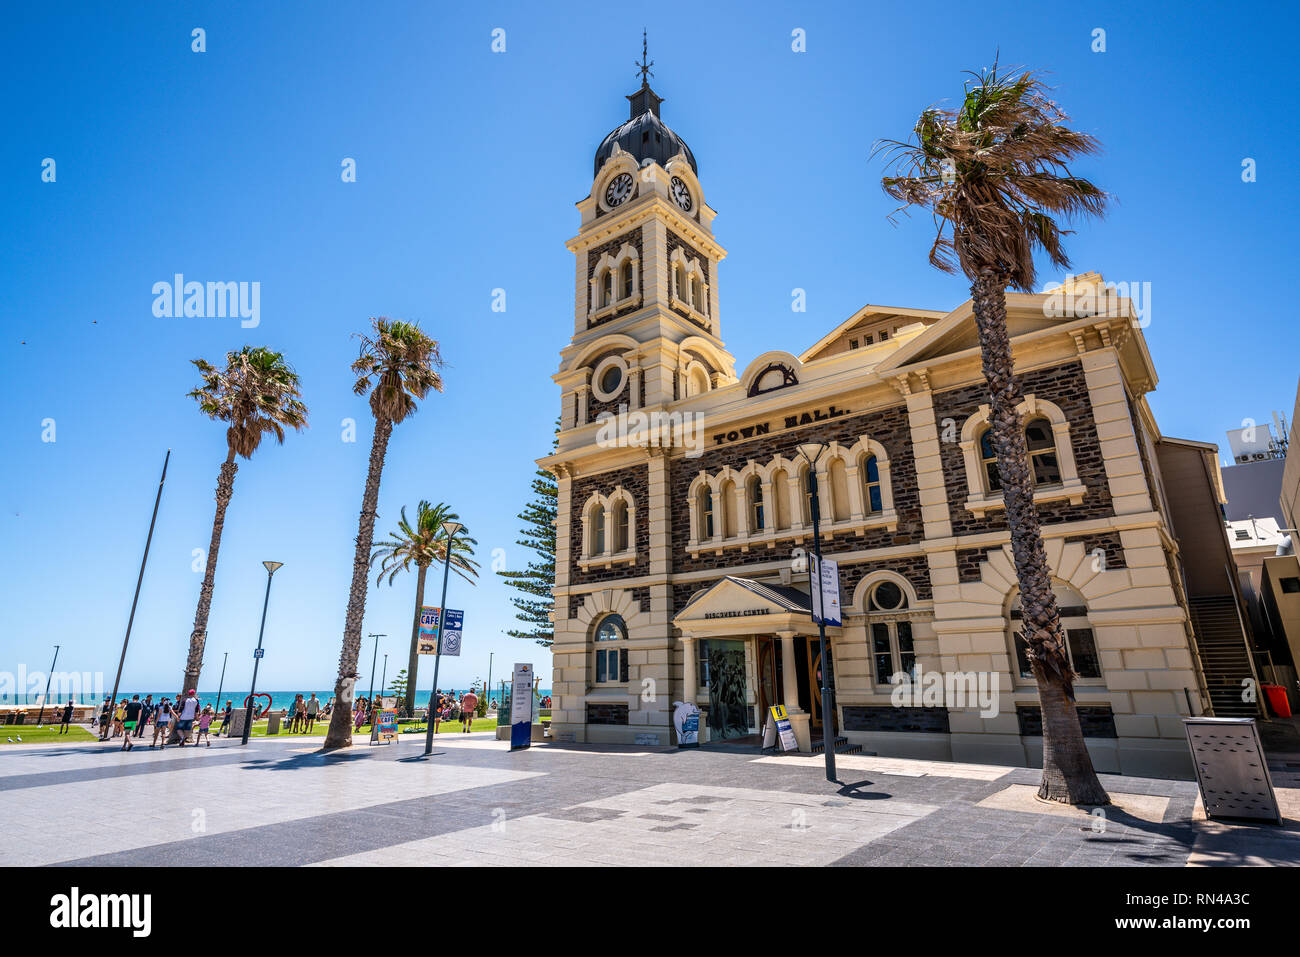 31 décembre 2018 , l'Australie du Sud Adélaïde Glenelg : mairie de Glenelg extérieur du bâtiment et la plage de Glenelg SA Australie Banque D'Images